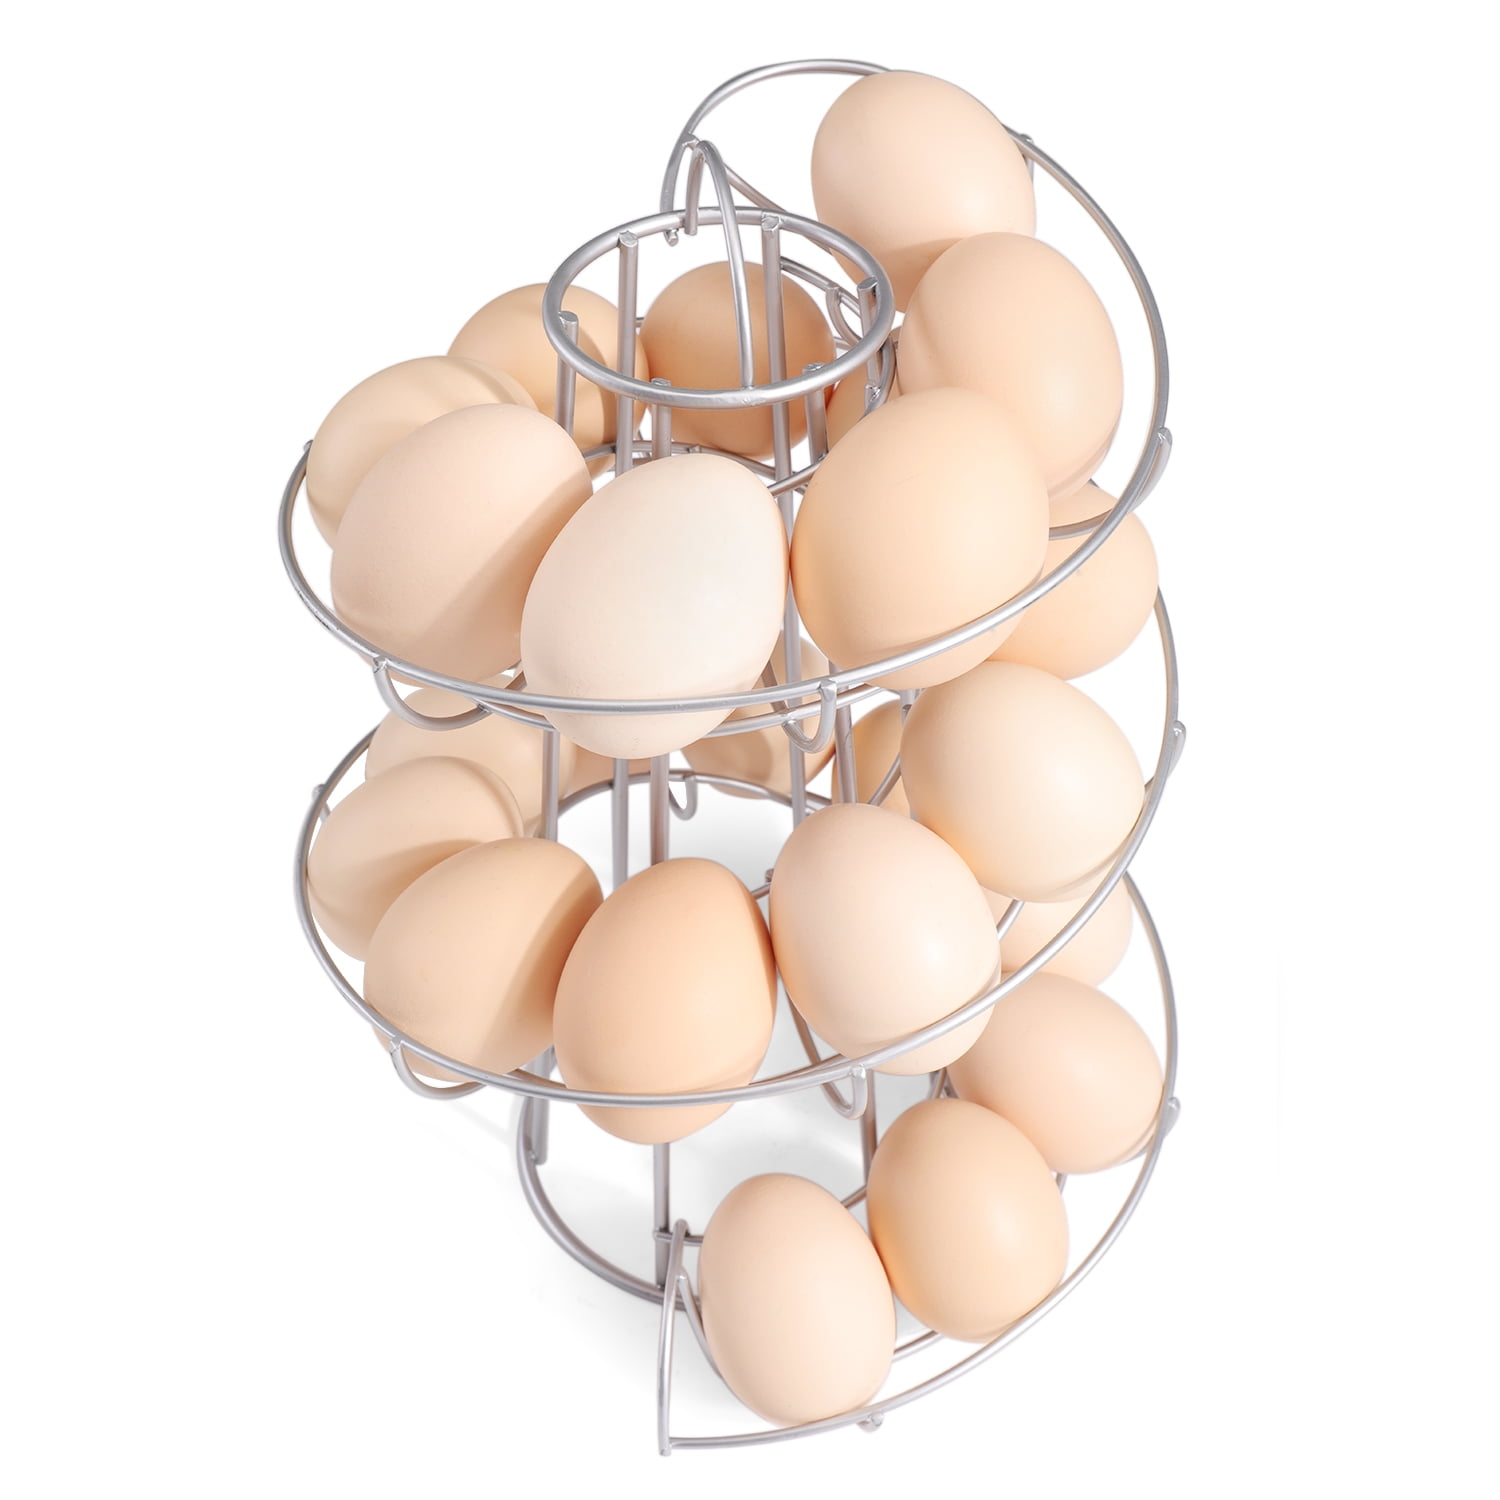 Giftgarden Metal Egg Skelter, Spiral Design Egg Dispenser Rack Holder with  Storage Basket for Countertop, Kitchen